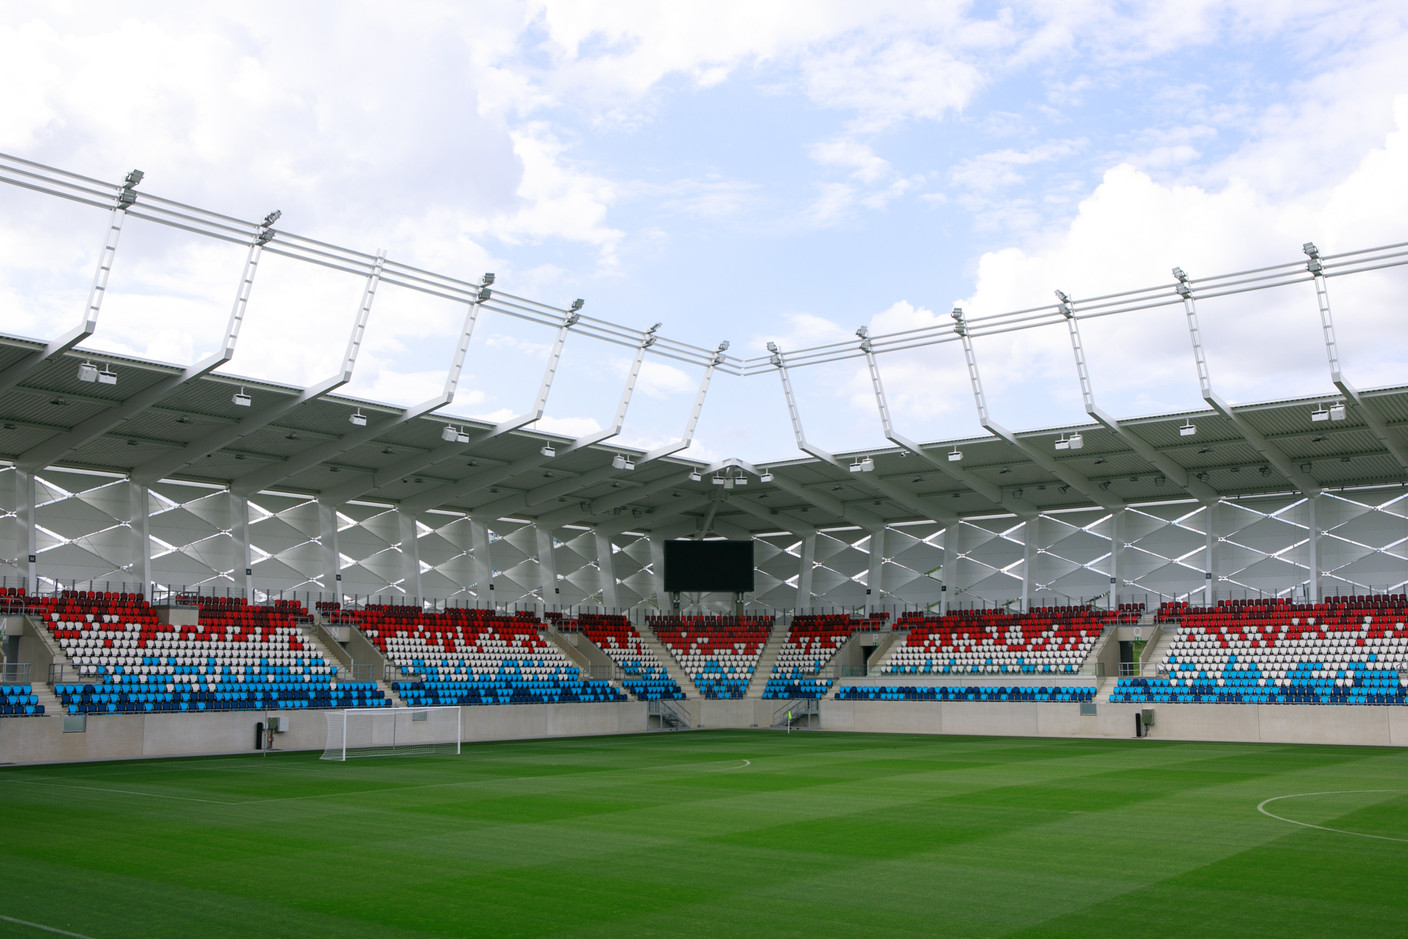 Le stade est aussi équipé de deux écrans géants.  (Photo: Matic Zorman/Maison Moderne)